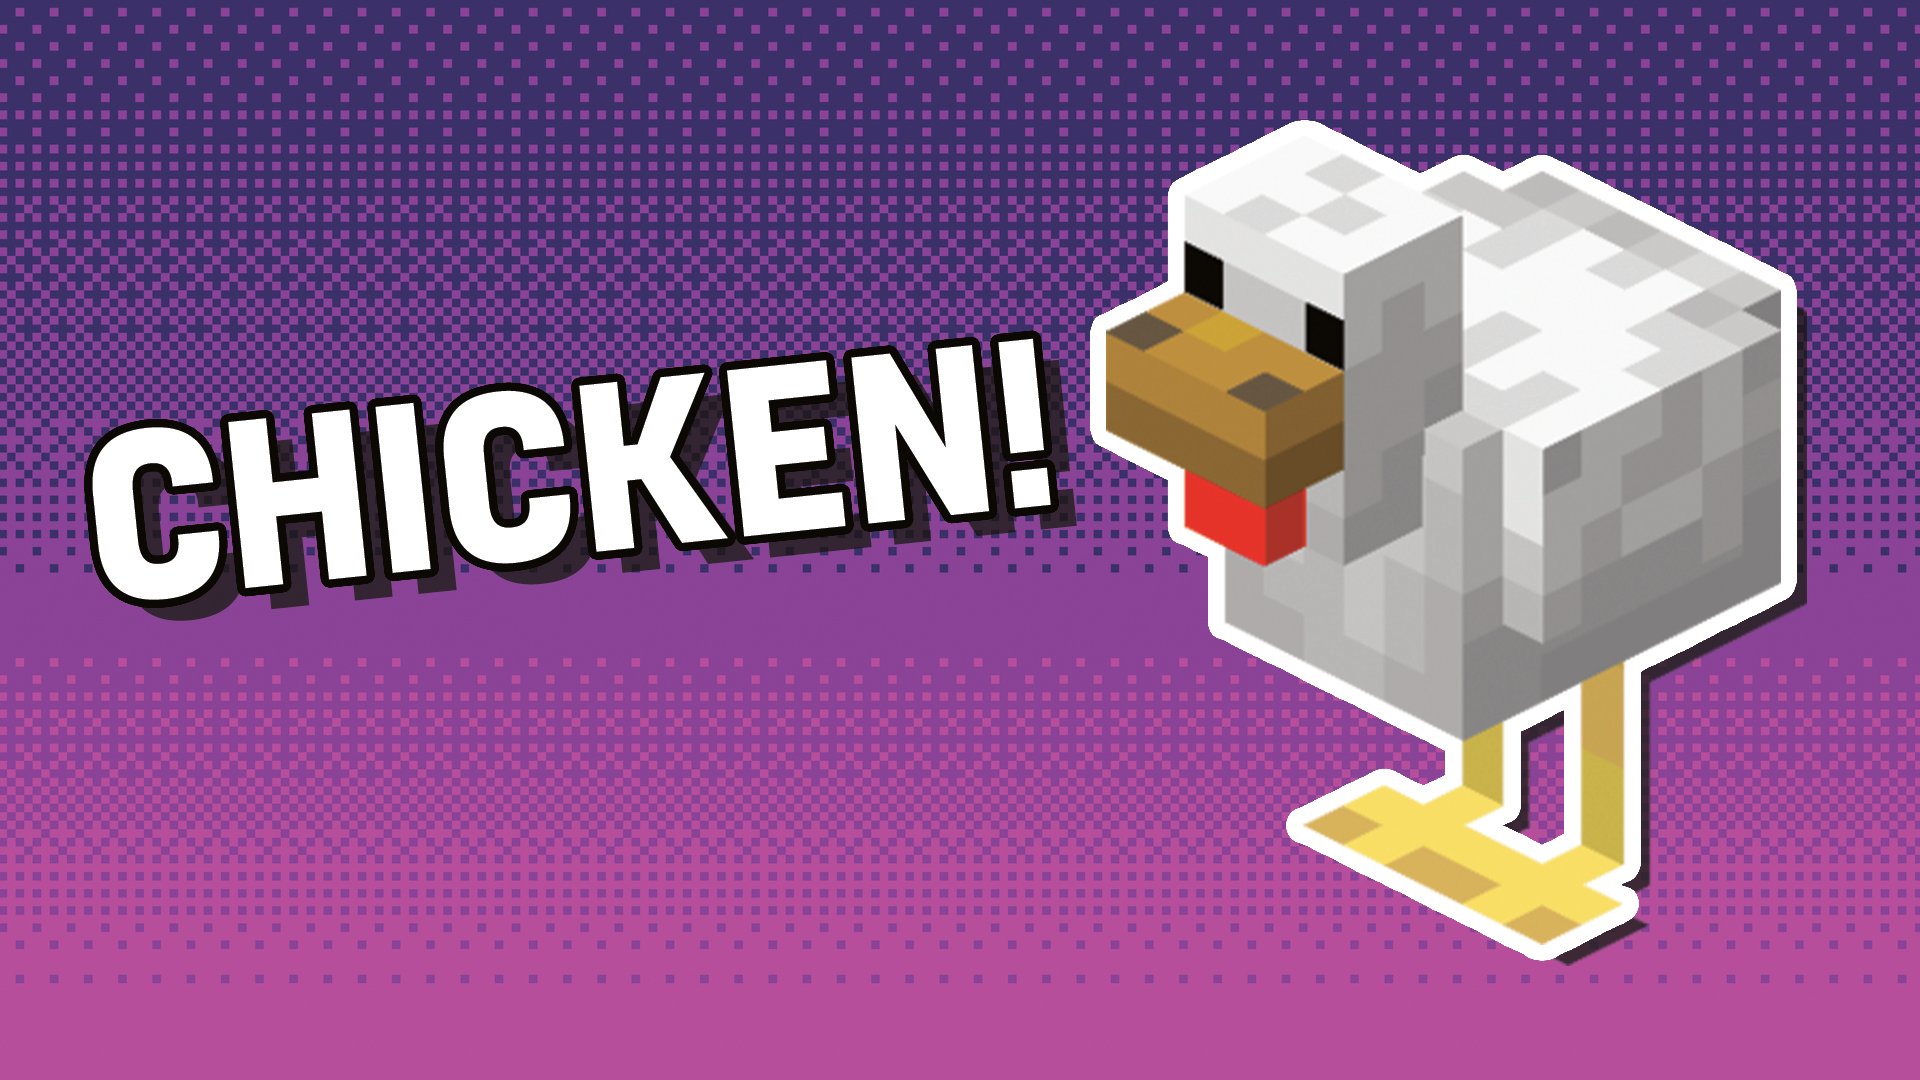 A Minecraft chicken